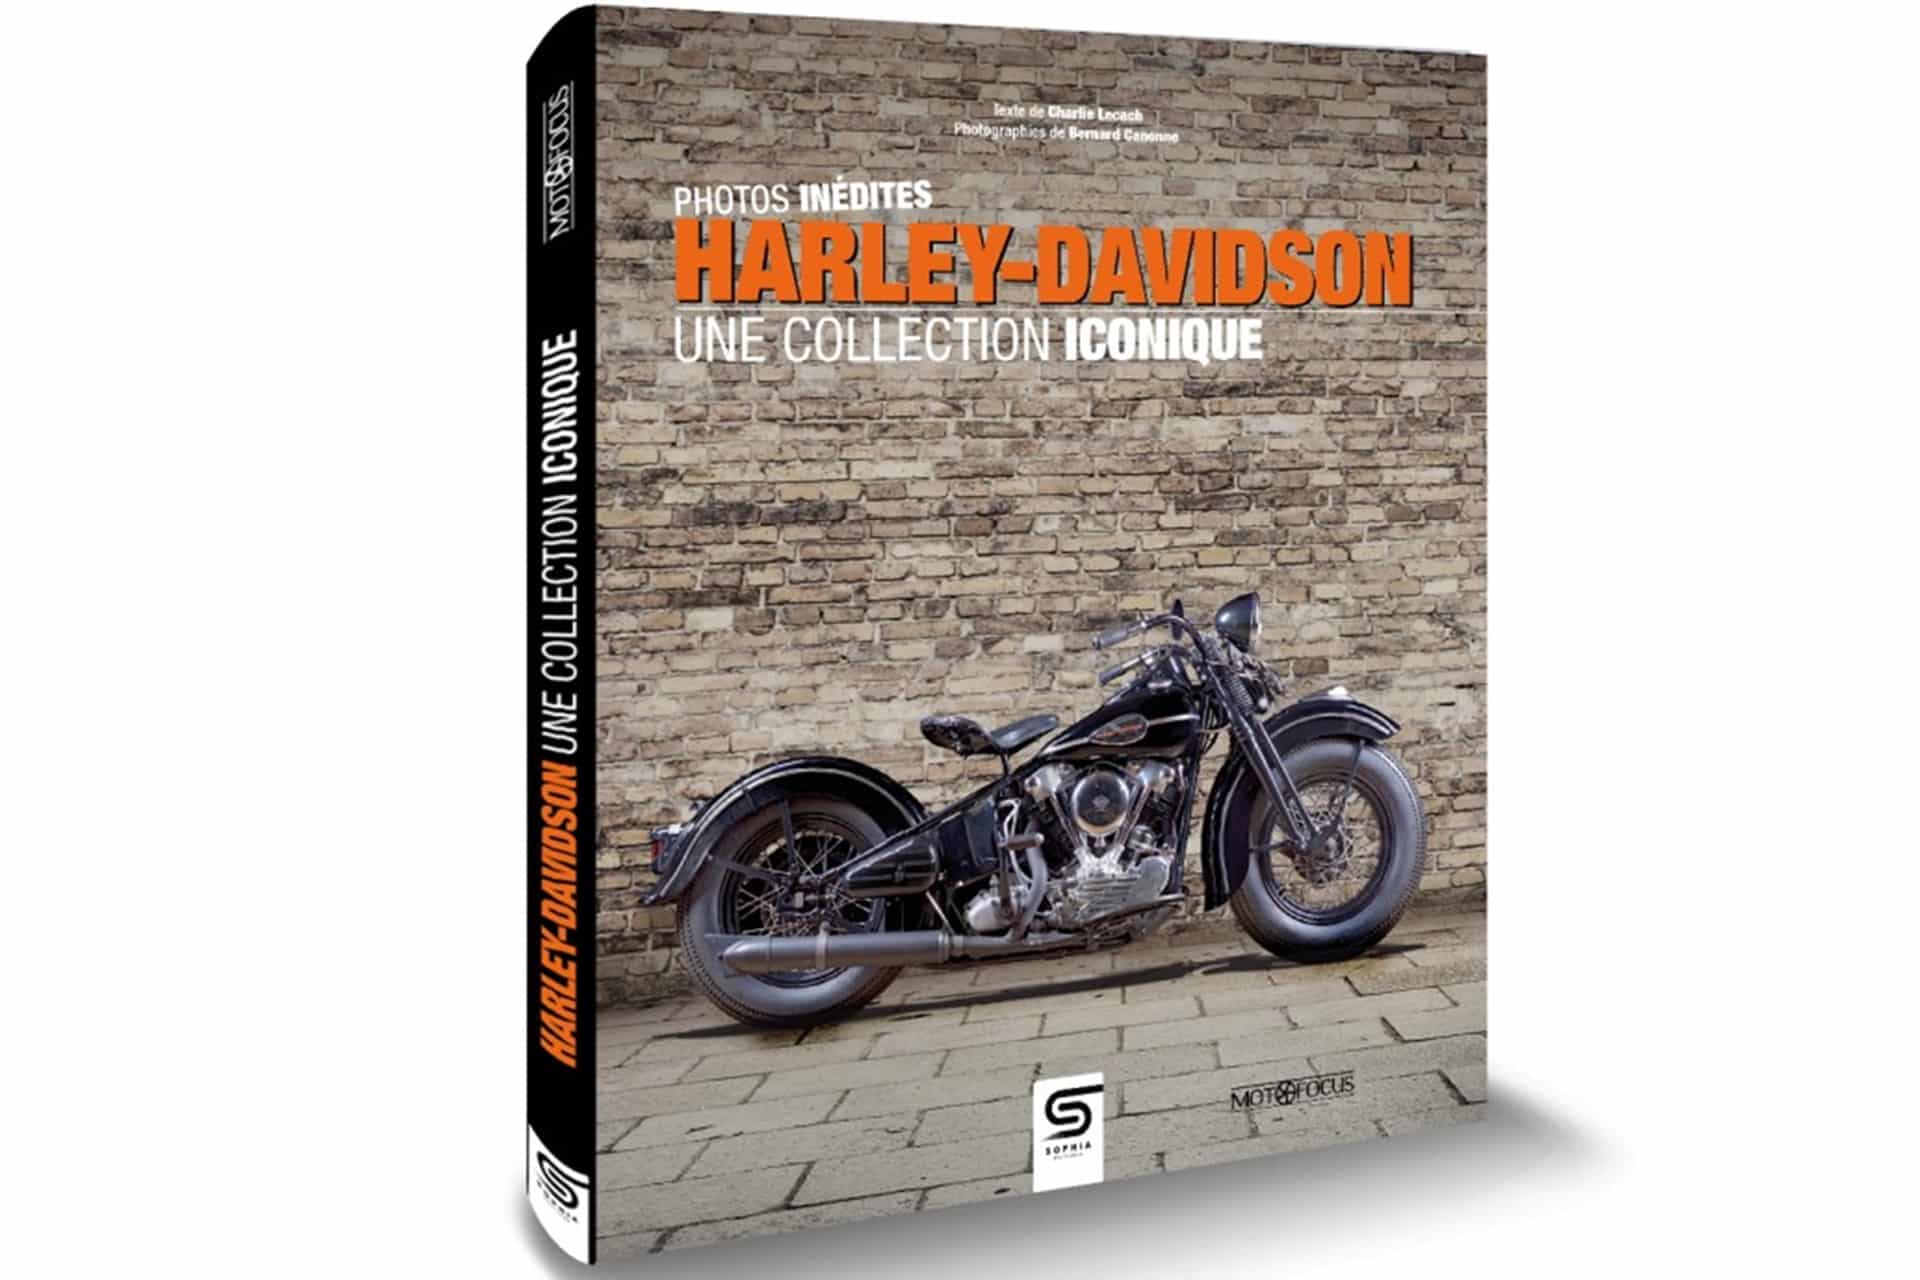 Harley-Davidson, una colección icónica: El libro que repasa los 120 años de historia de la marca